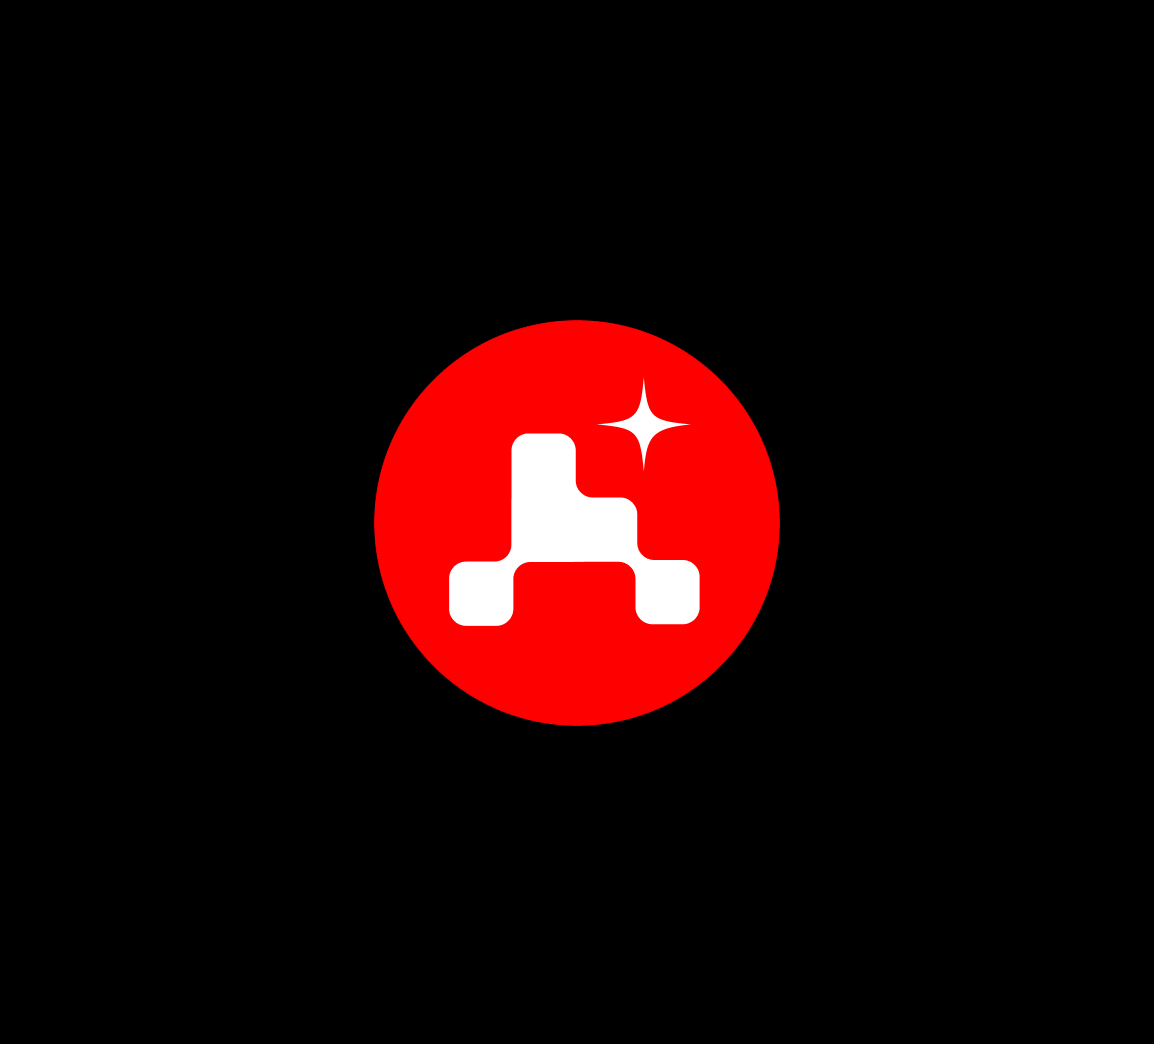 mars2020 logo mark and branding